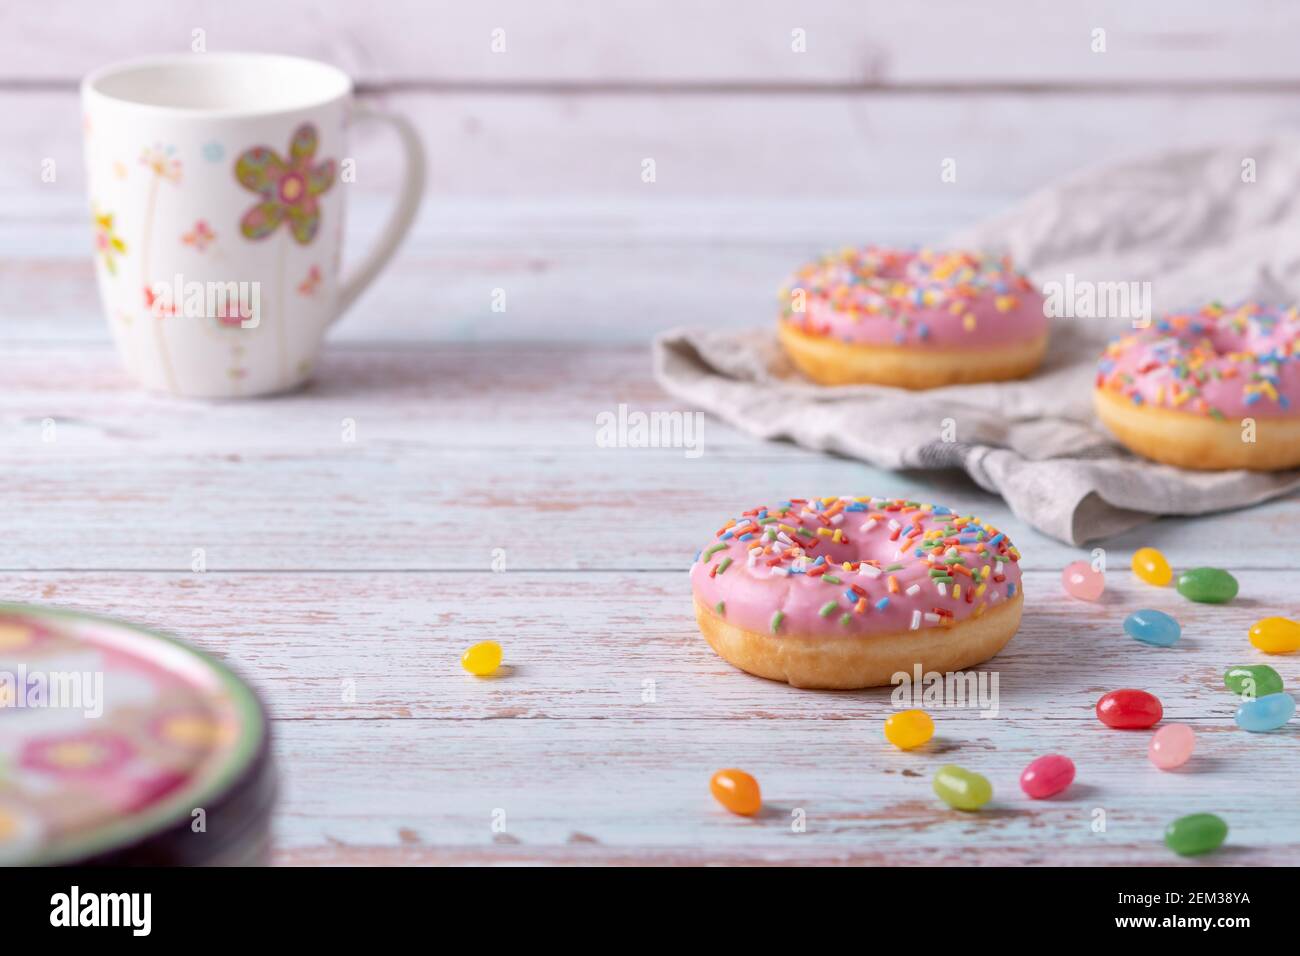 Leckere Donuts mit rosa Glasur, bunten Streuseln und Gelee-Bohnen auf Holzhintergrund. Süßes Gebäck als Snack für Kindergeburtstag. Stockfoto